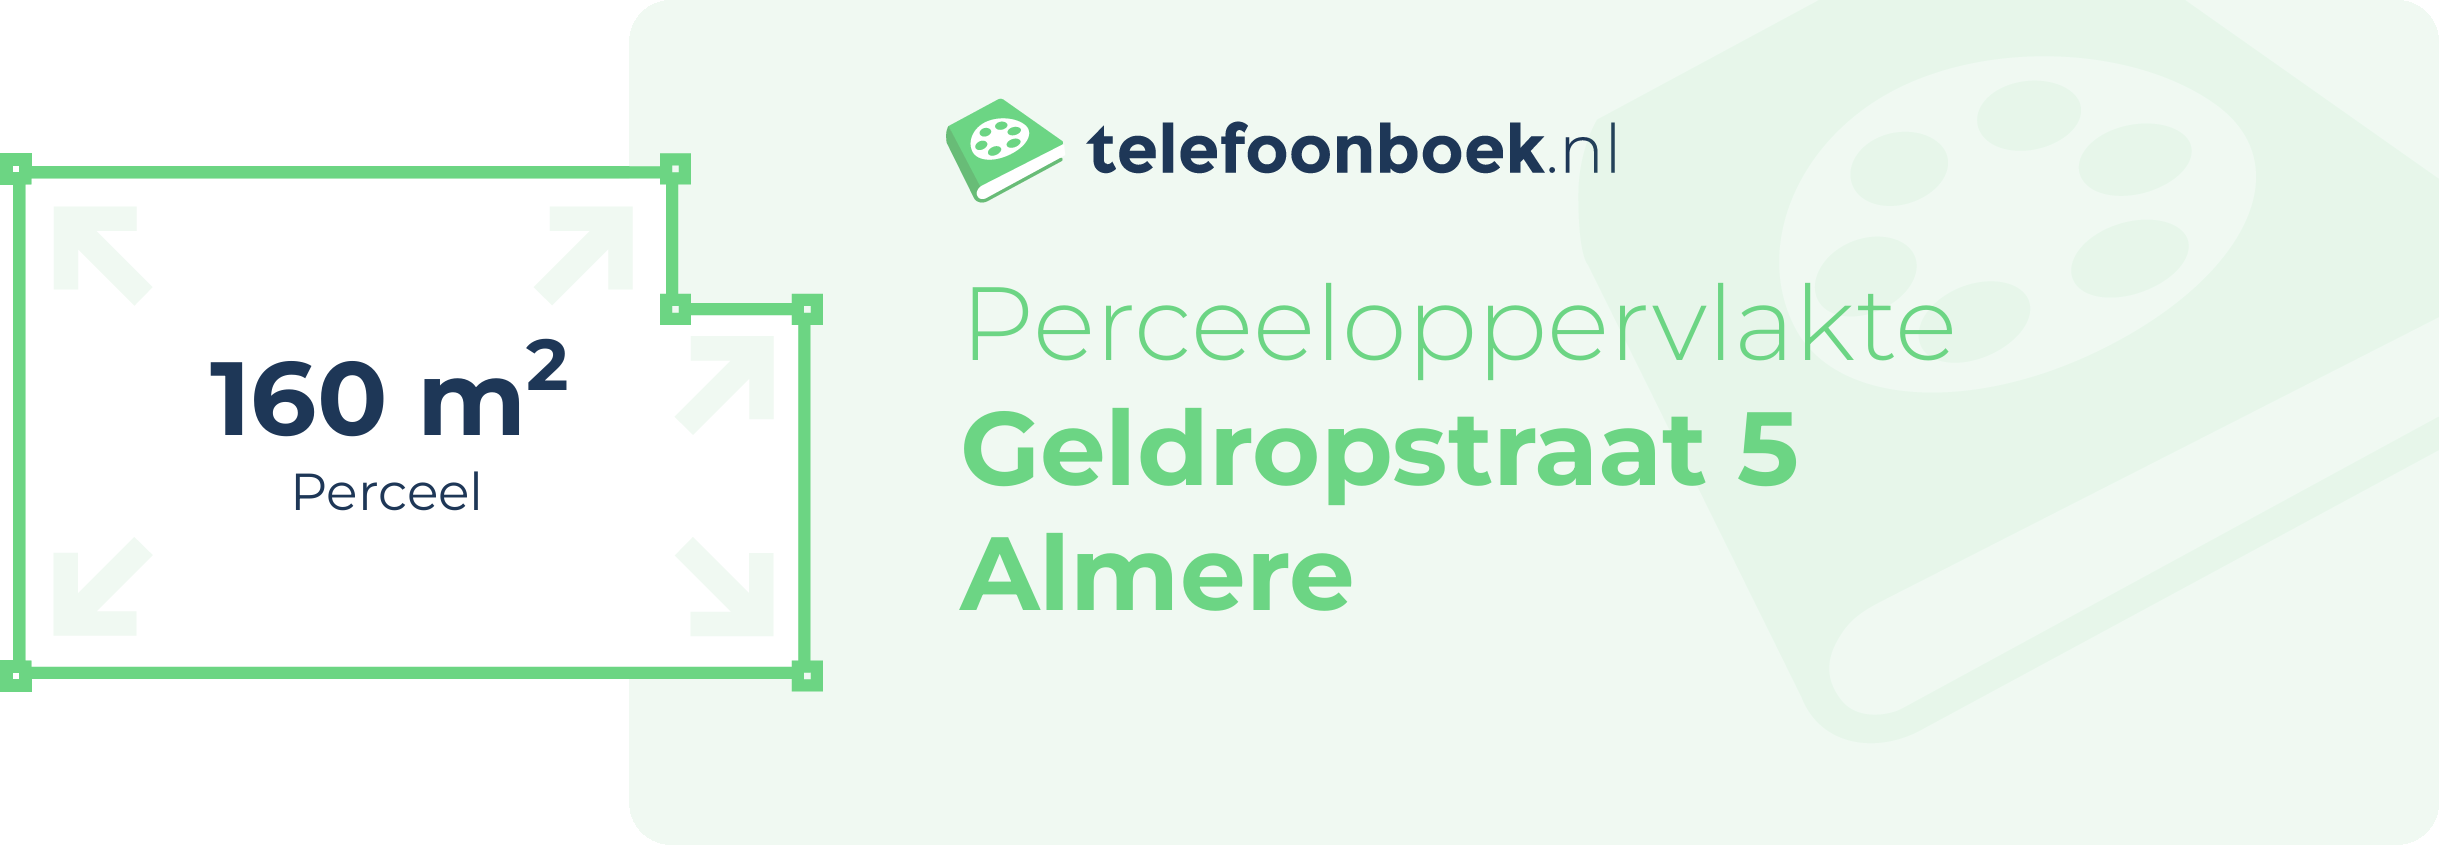 Perceeloppervlakte Geldropstraat 5 Almere